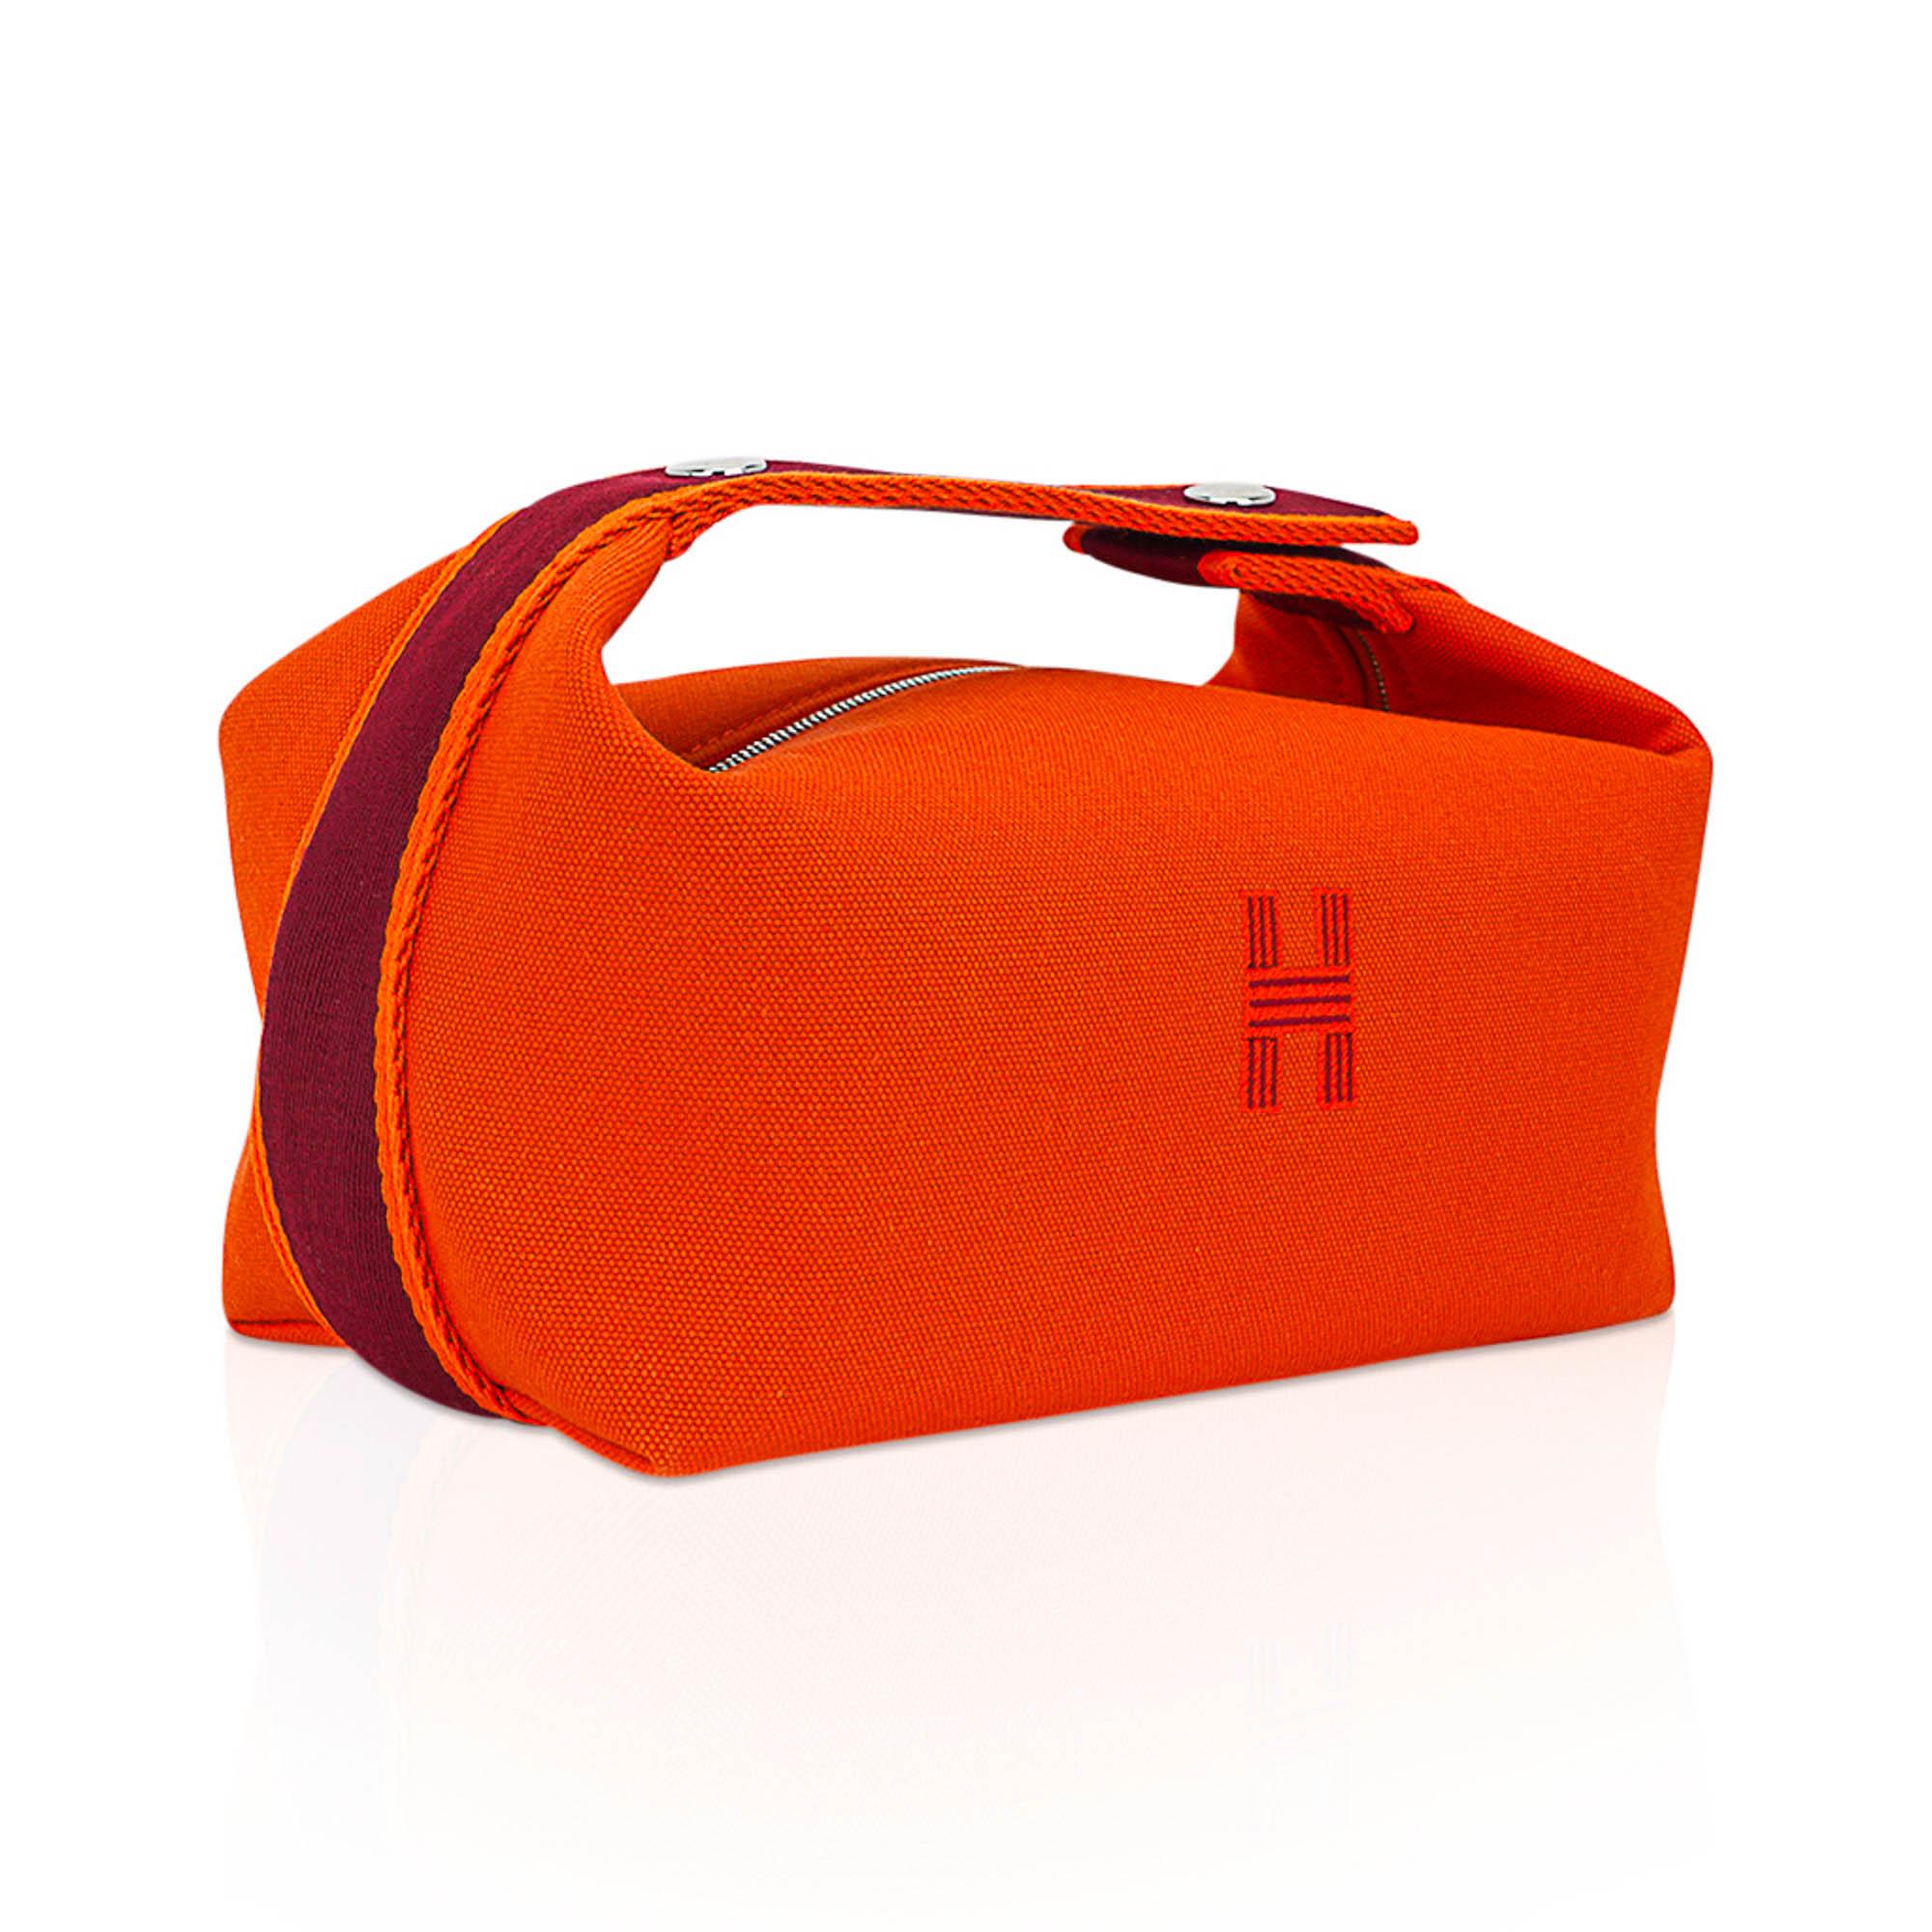 Mightychic bietet ein Hermes Bride-A-Brac Pencil Case kleines Modell in Orange H Plume Baumwoll-Canvas vorgestellt.
Die Trousse de Toilette hat ein gesticktes H auf der Vorderseite.
Der obere Riemen, inspiriert von einer Zeichnung von Gianpaolo